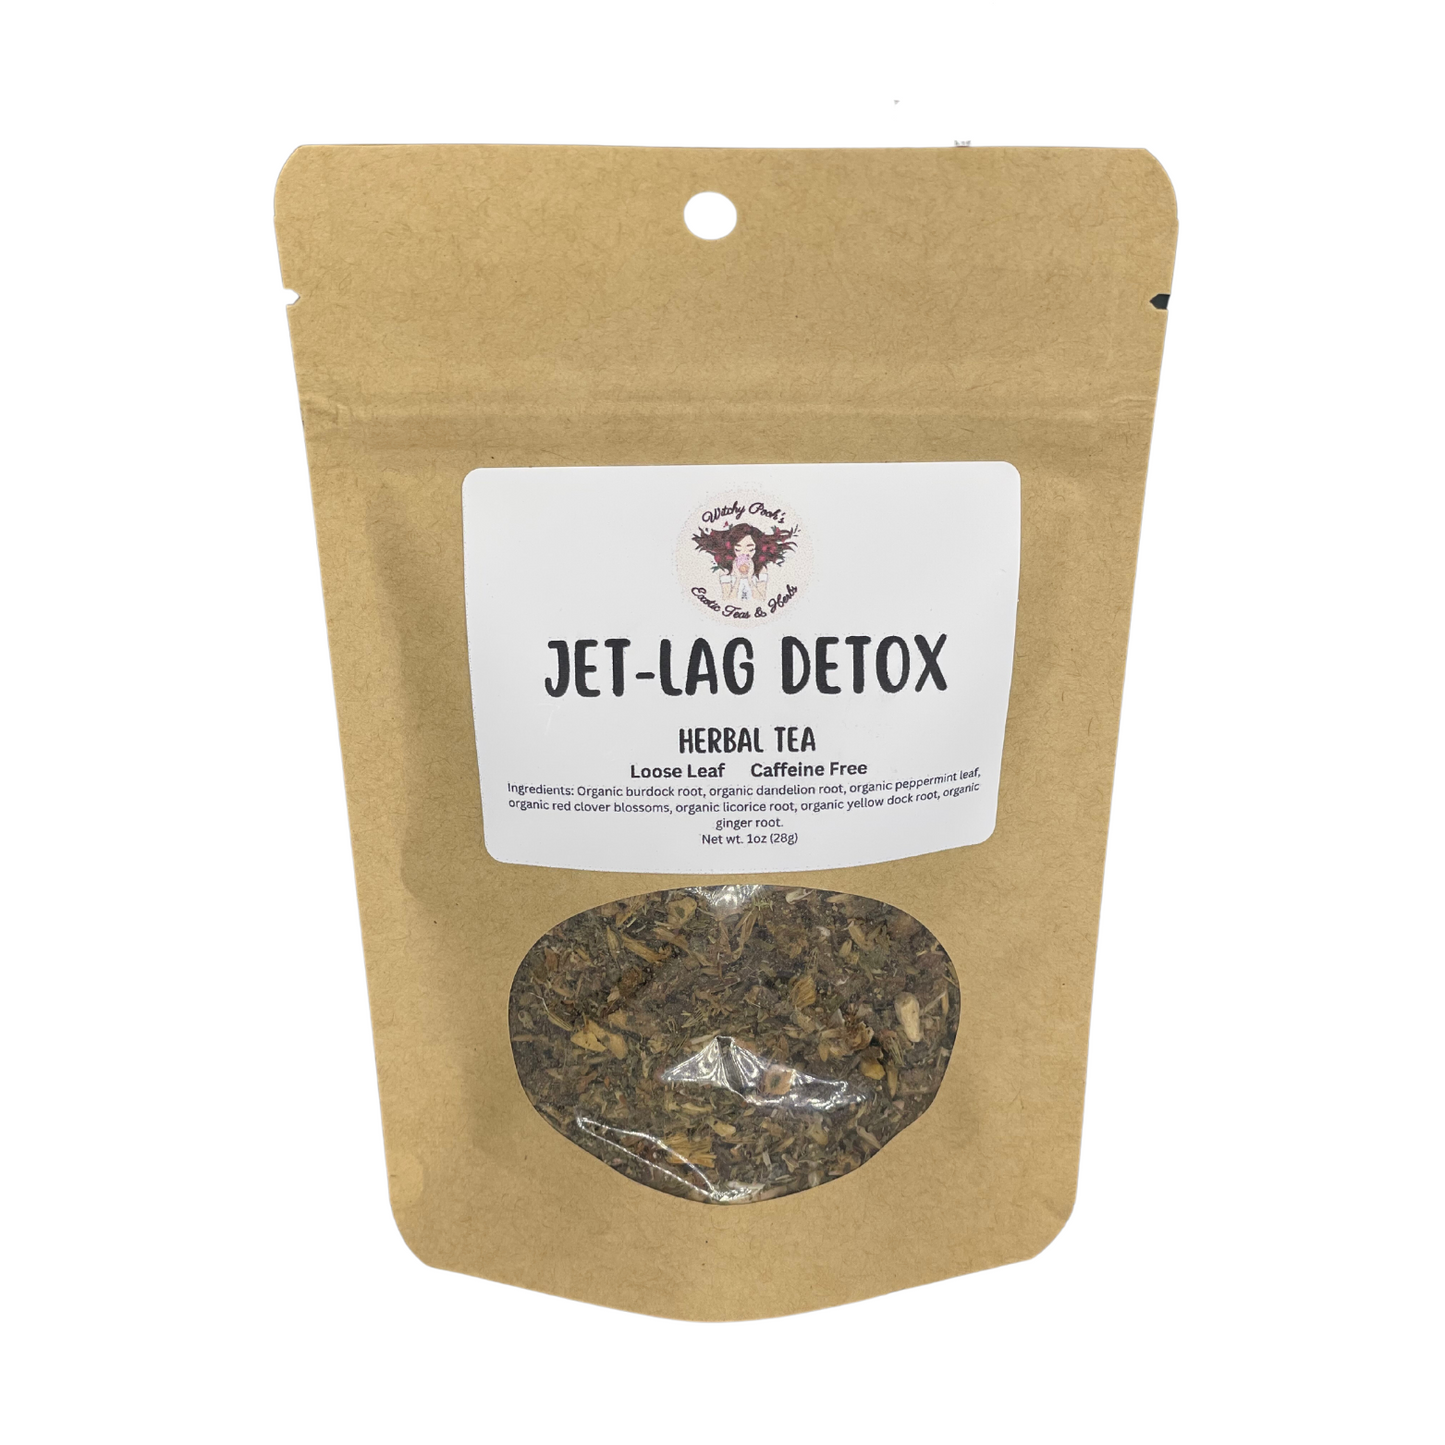 Jet-Lag Relief Tea, Detox Tea, Herbal Tea, Loose Leaf Tea, Caffeine Free Tea,  Functional Tea, Organic Tea